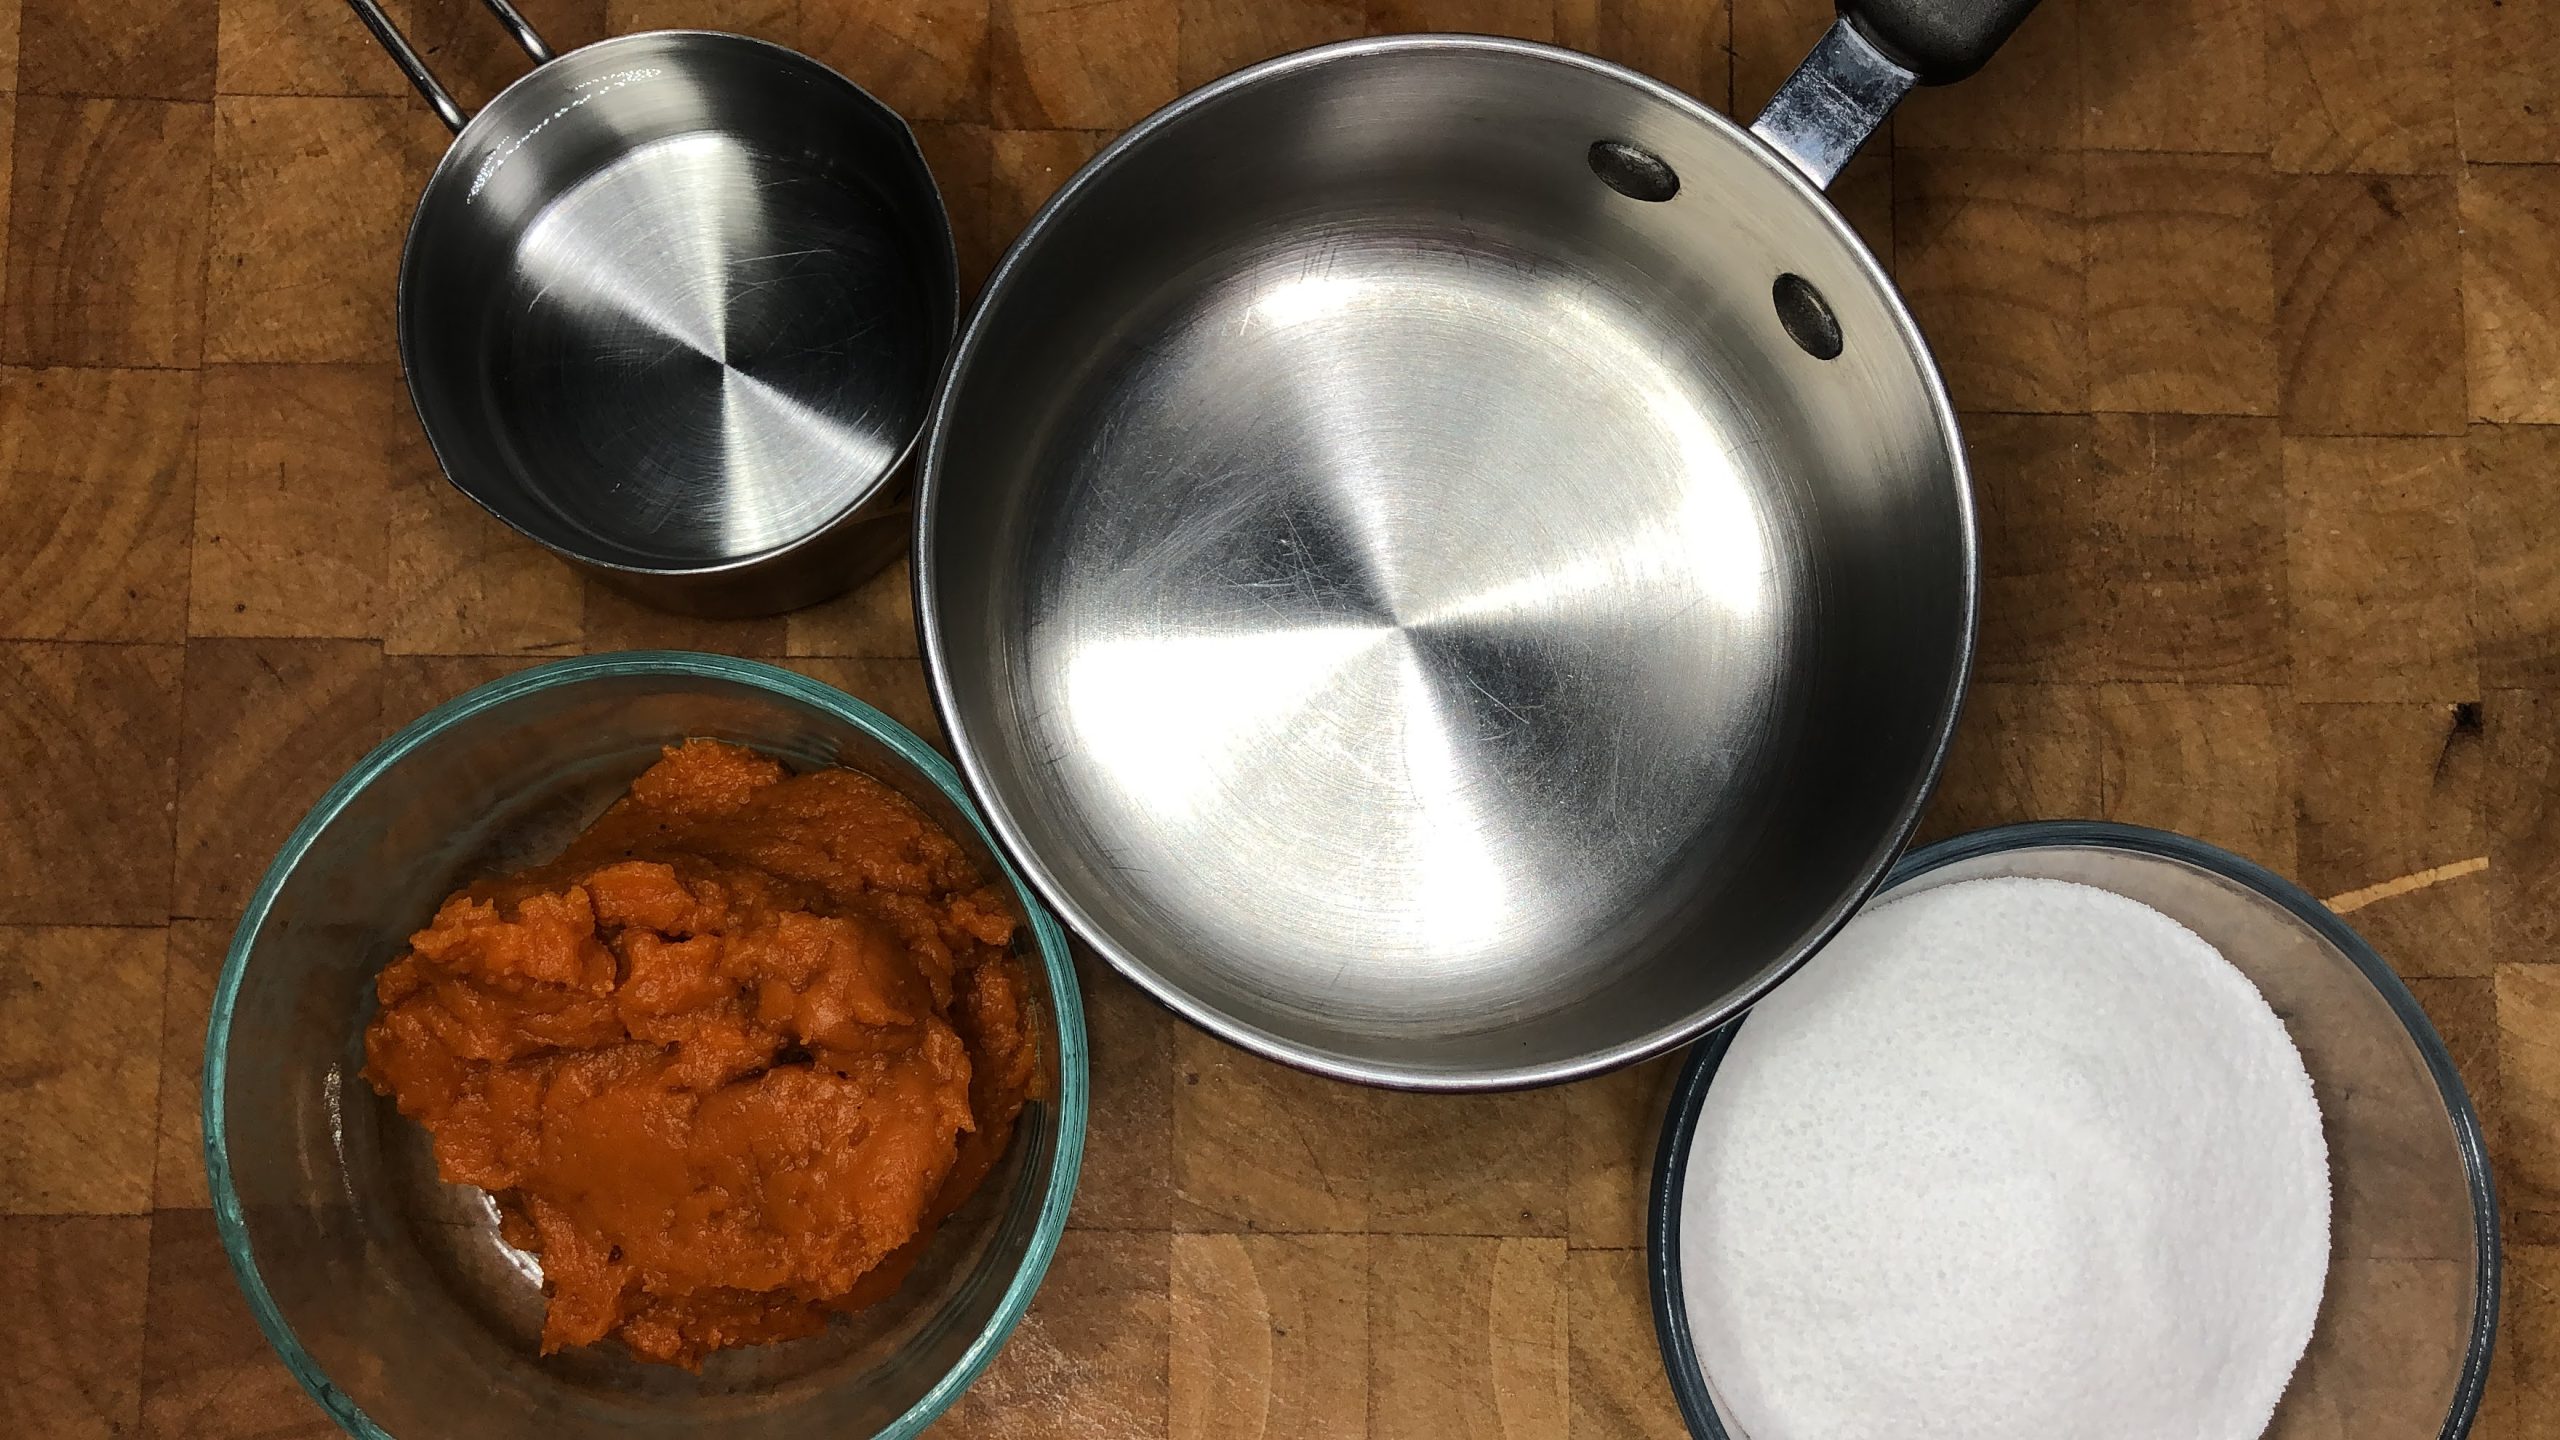 Bowls of pumpkin, sugar and water next to a saucepan.